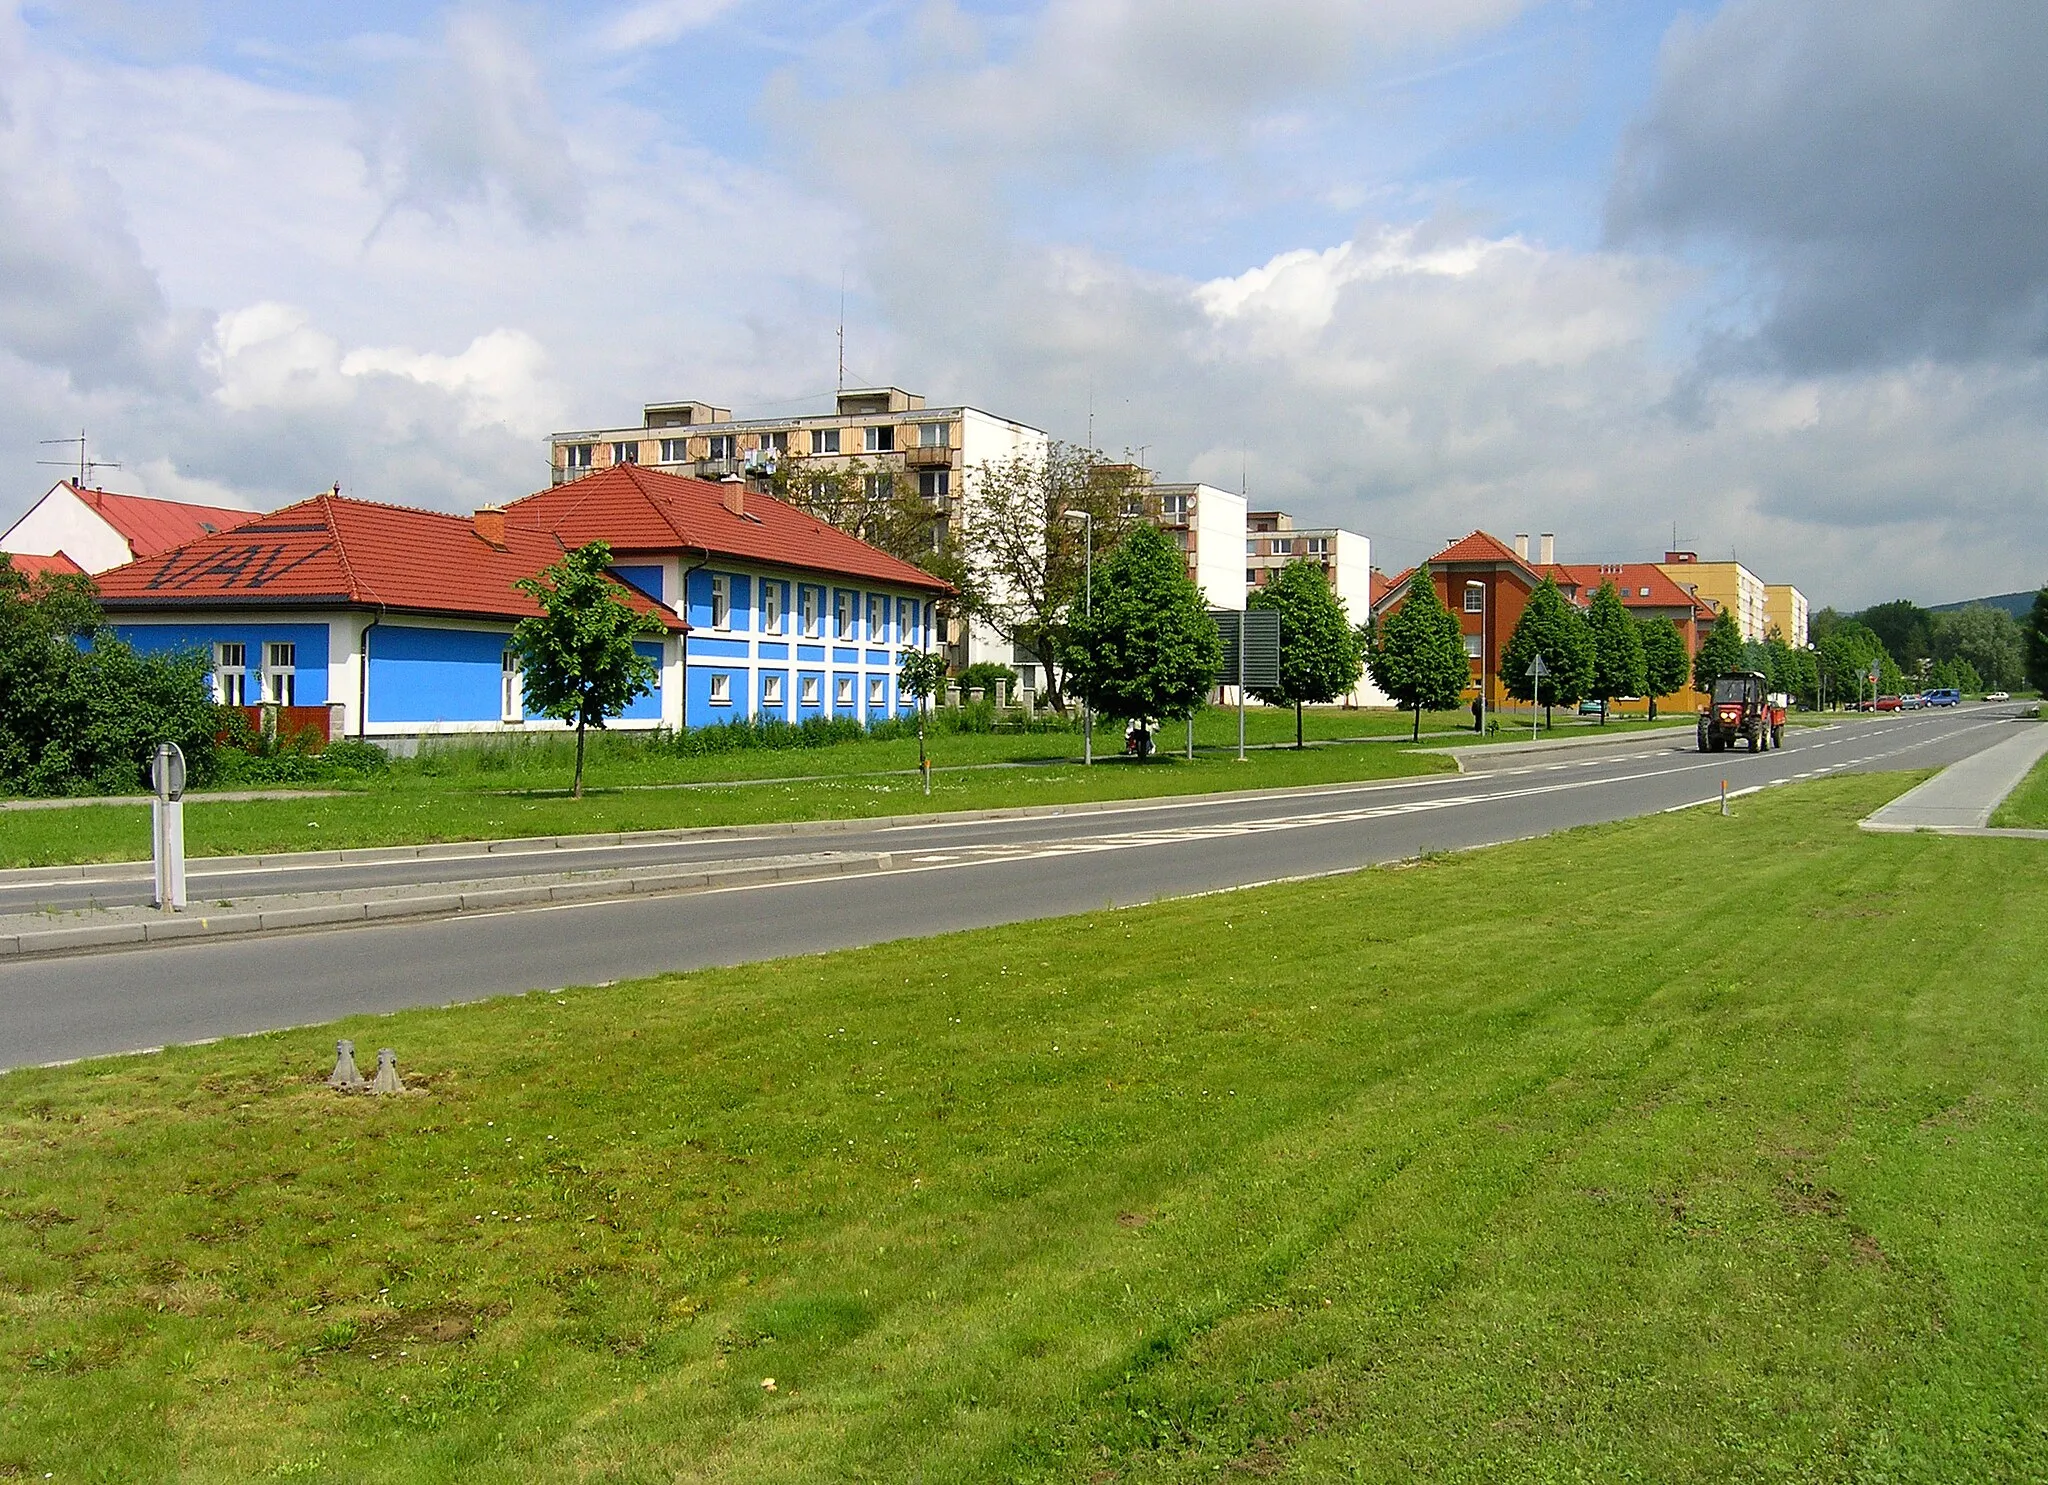 Photo showing: Dostihová street in Slušovice, Czech Republic